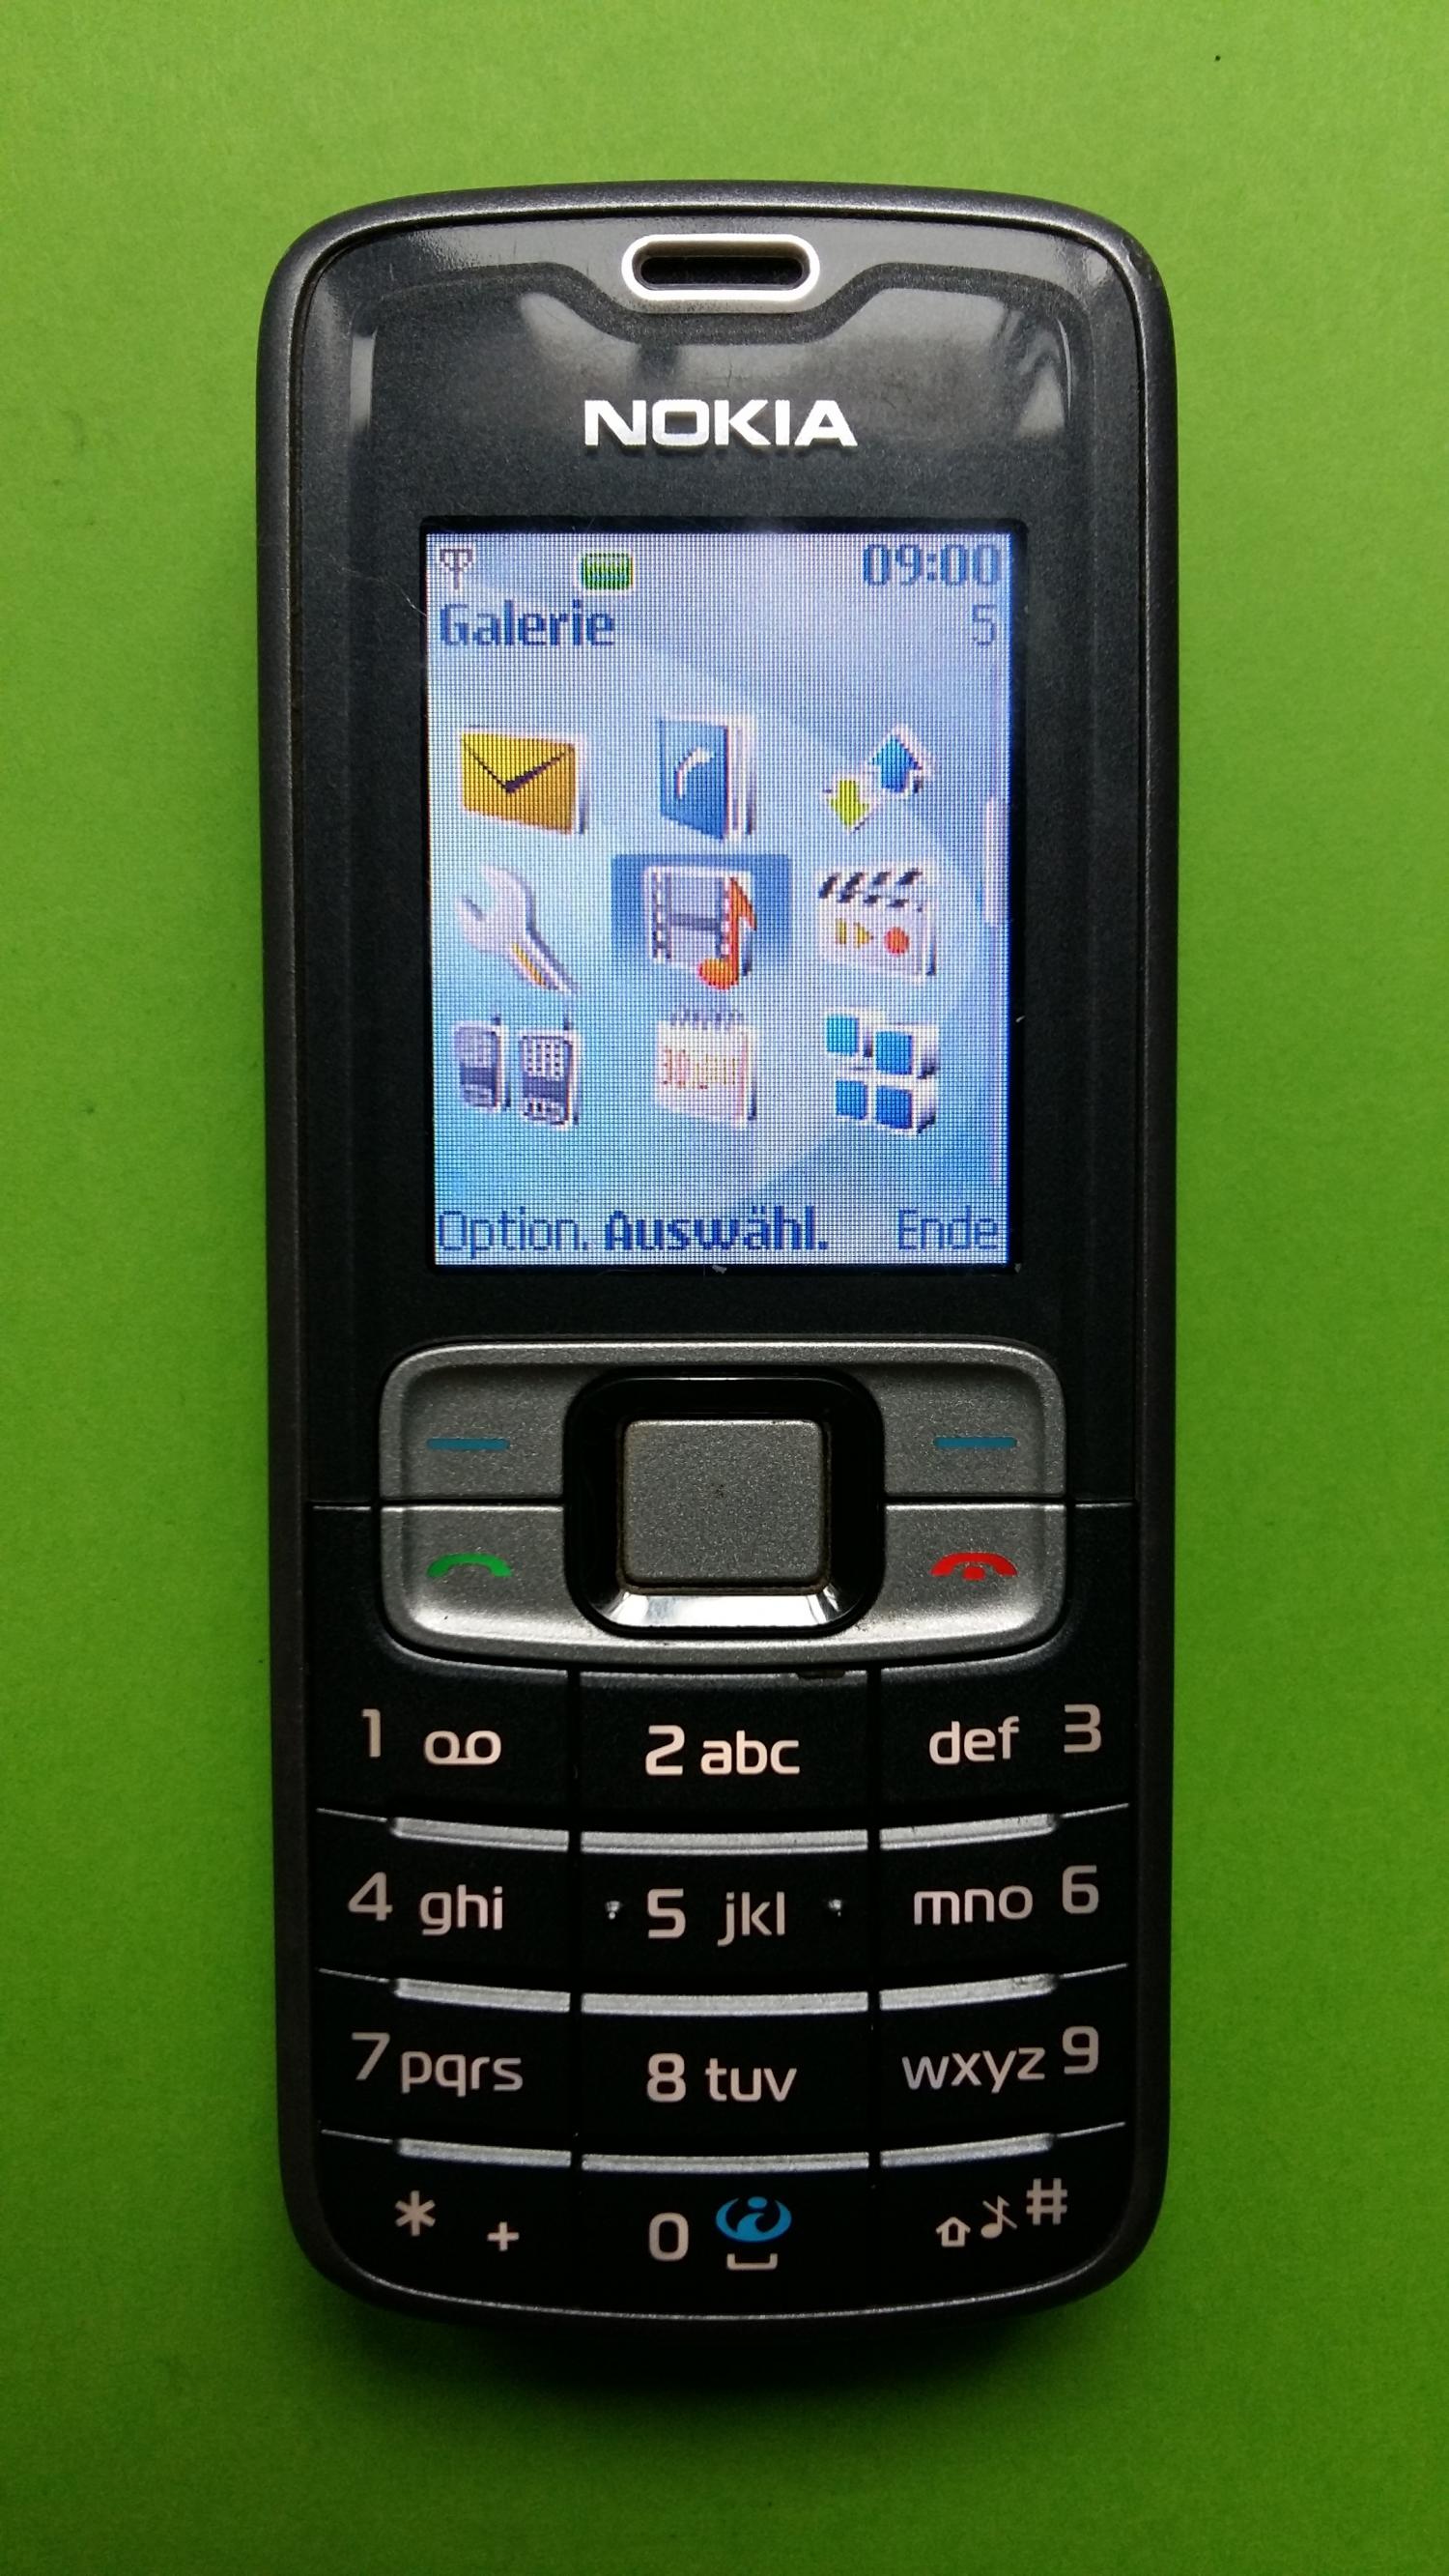 image-7304619-Nokia 3109C (2)1.jpg